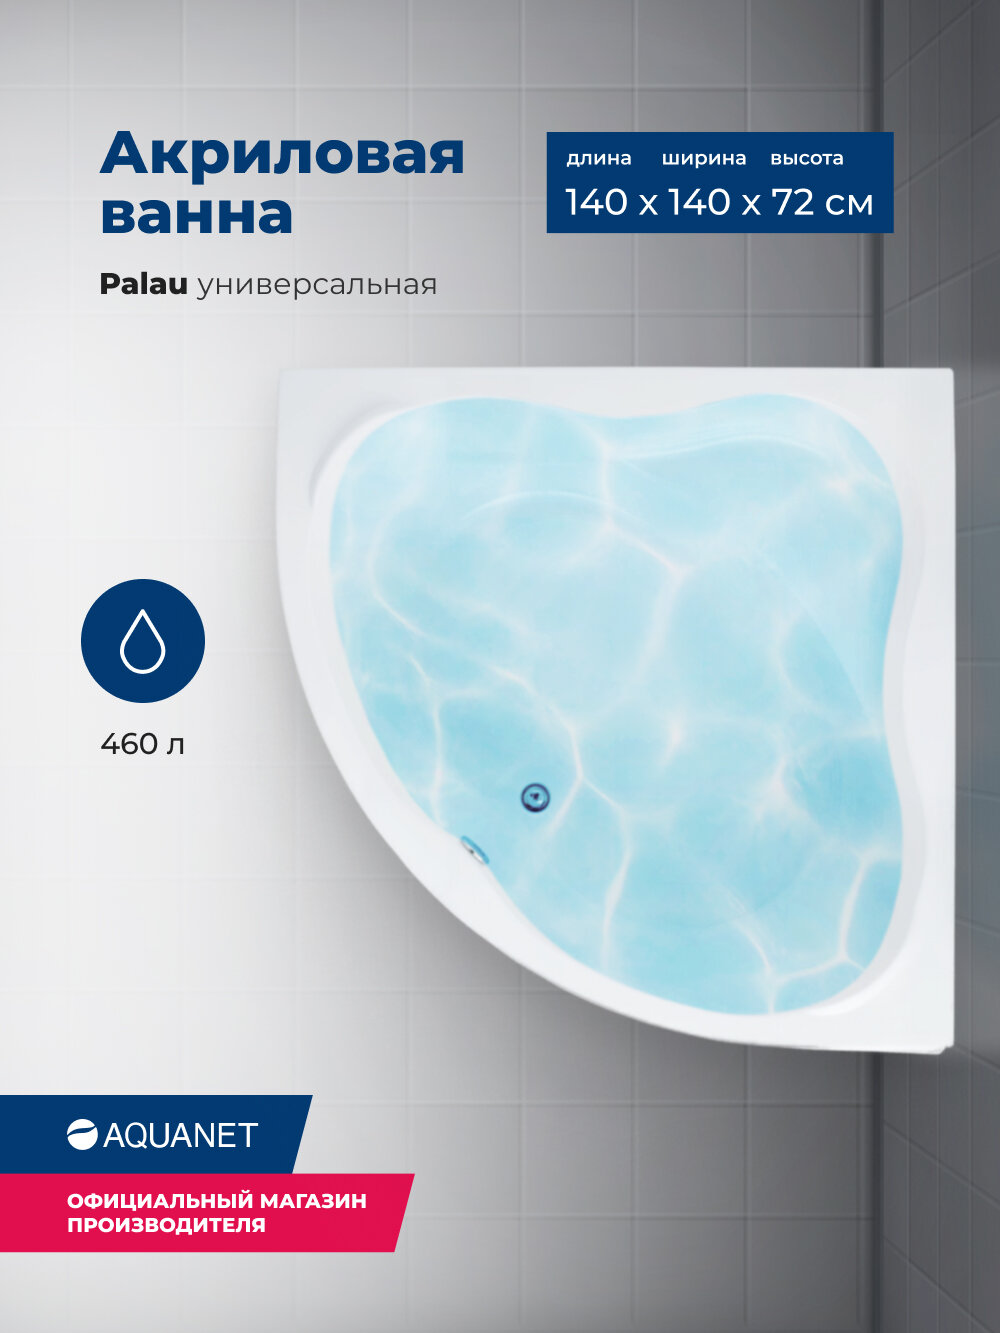 Акриловая ванна Aquanet Palau 140x140. Комплект 3 в 1: ванна с каркасом и лицевой панелью